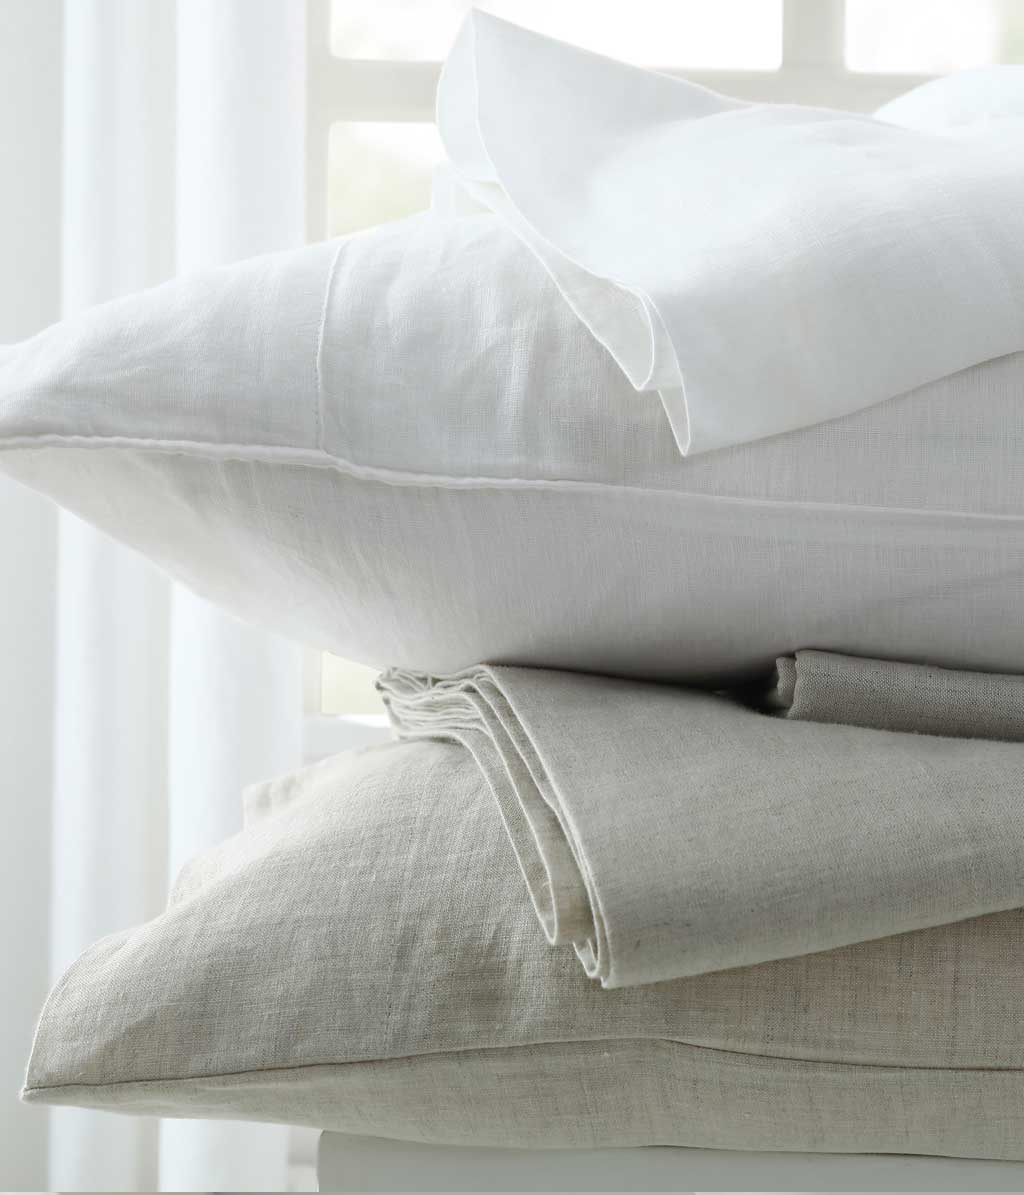 Laundered Linen White Pillowcase Set